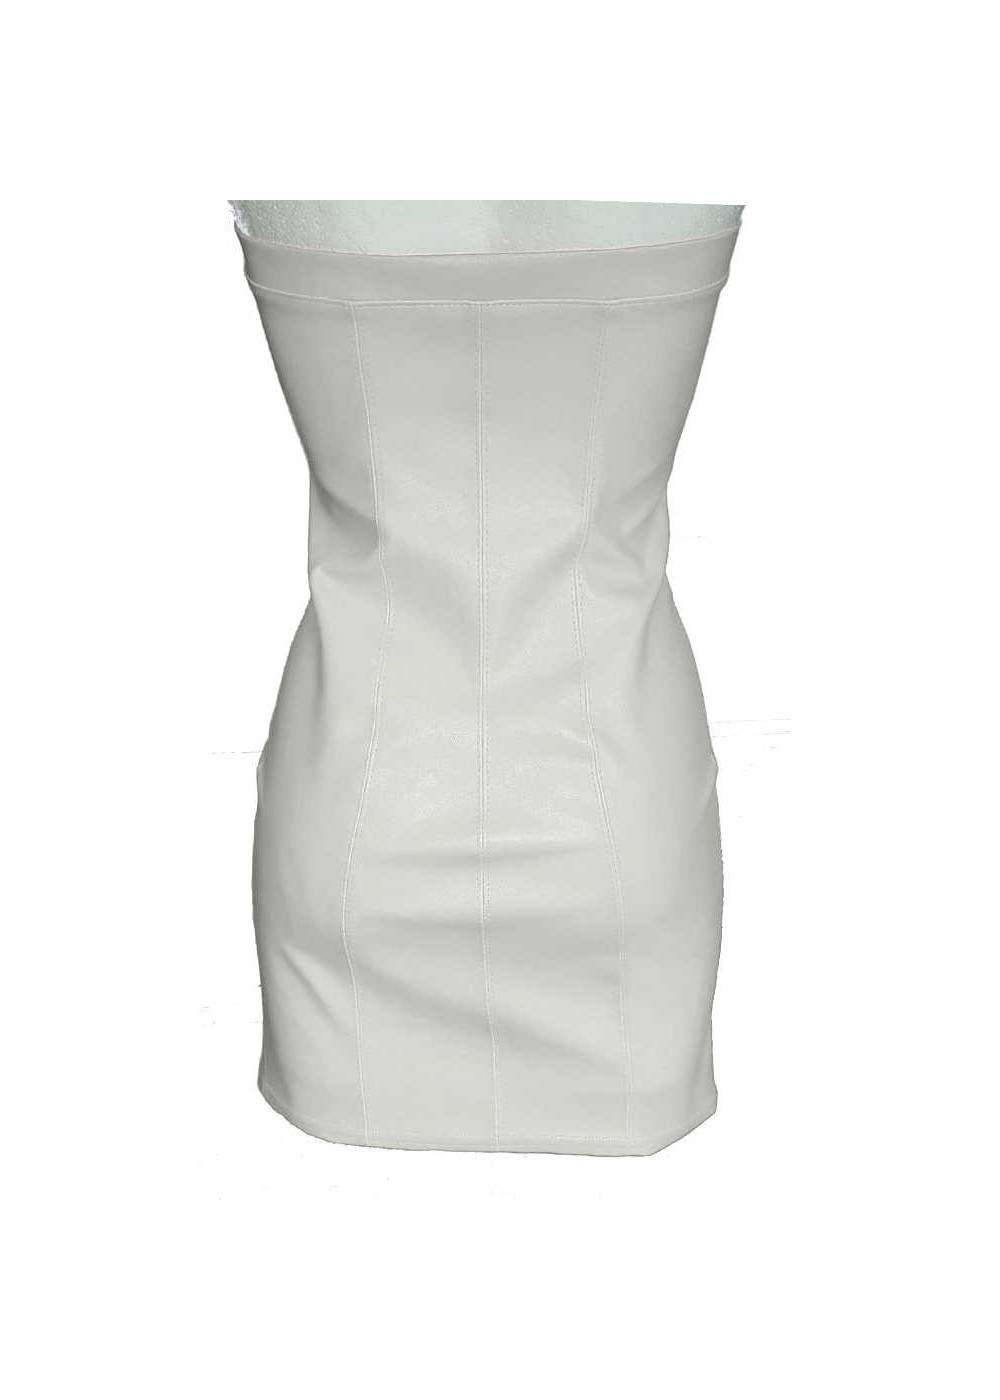 Weißes Lederkleid an Brüsten zum öffnen mit Reißverschluss Rabatt 11% - 